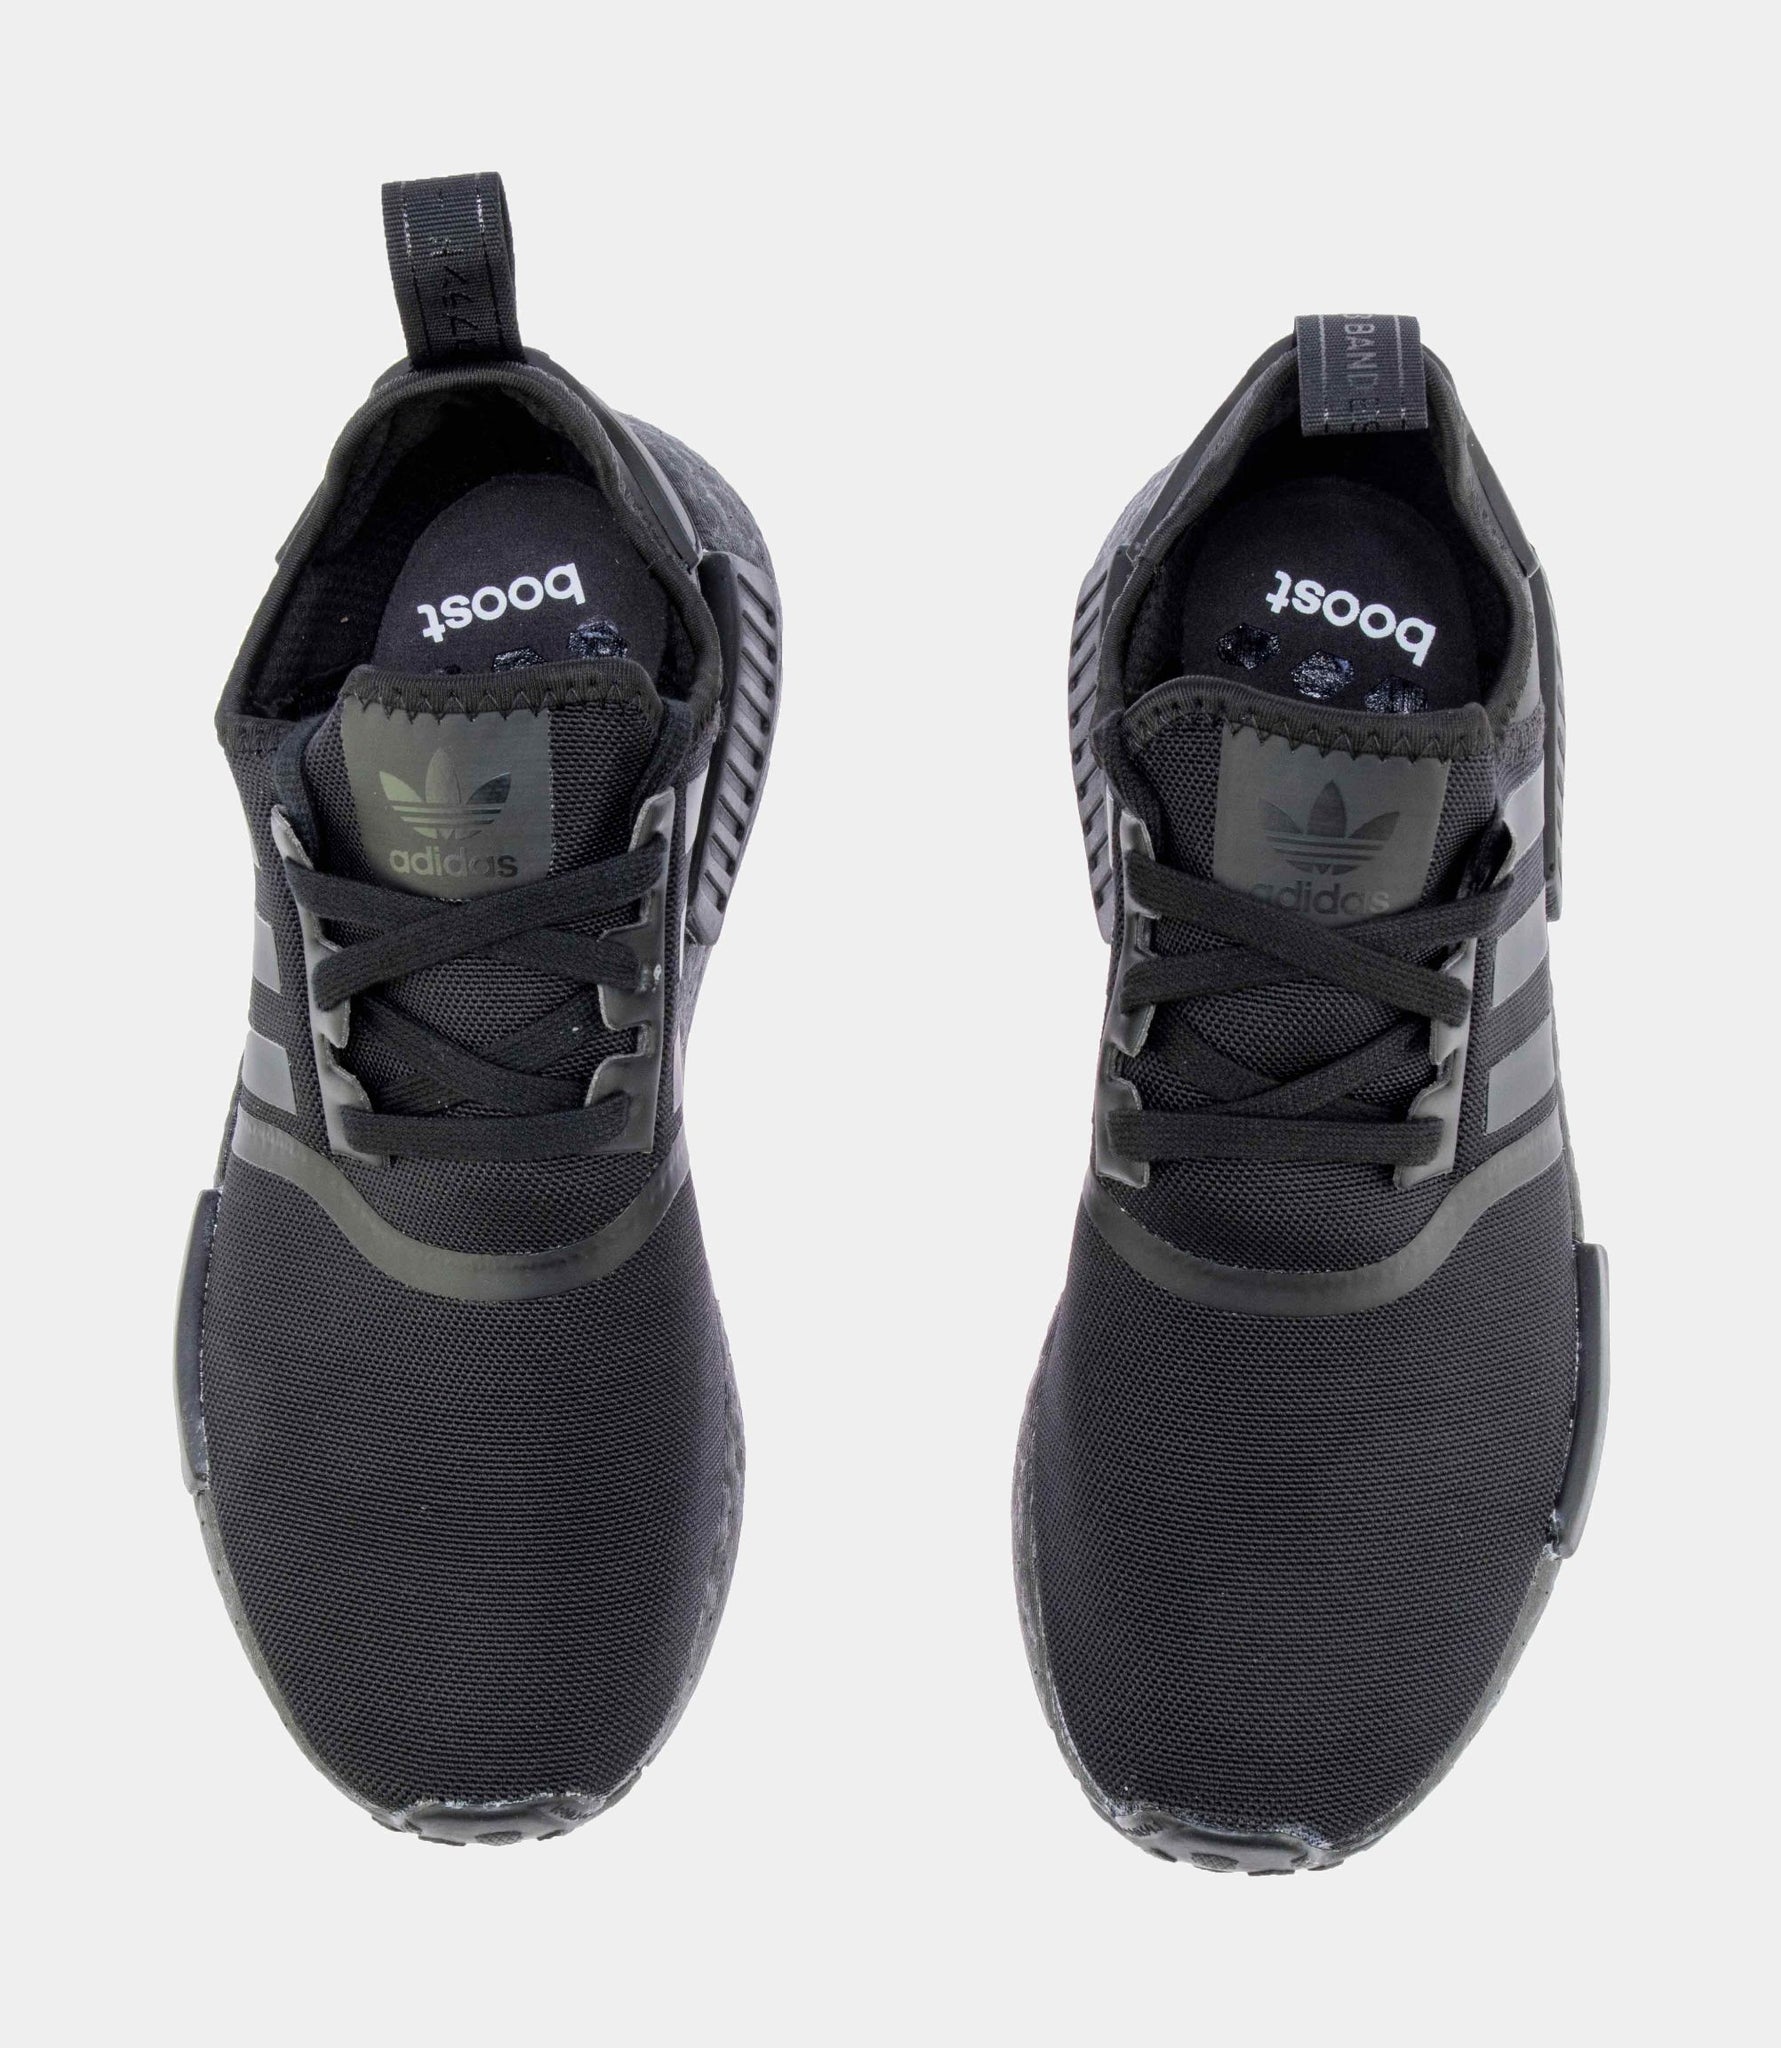 Adidas NMD R1 Core Black/Black - FV9015